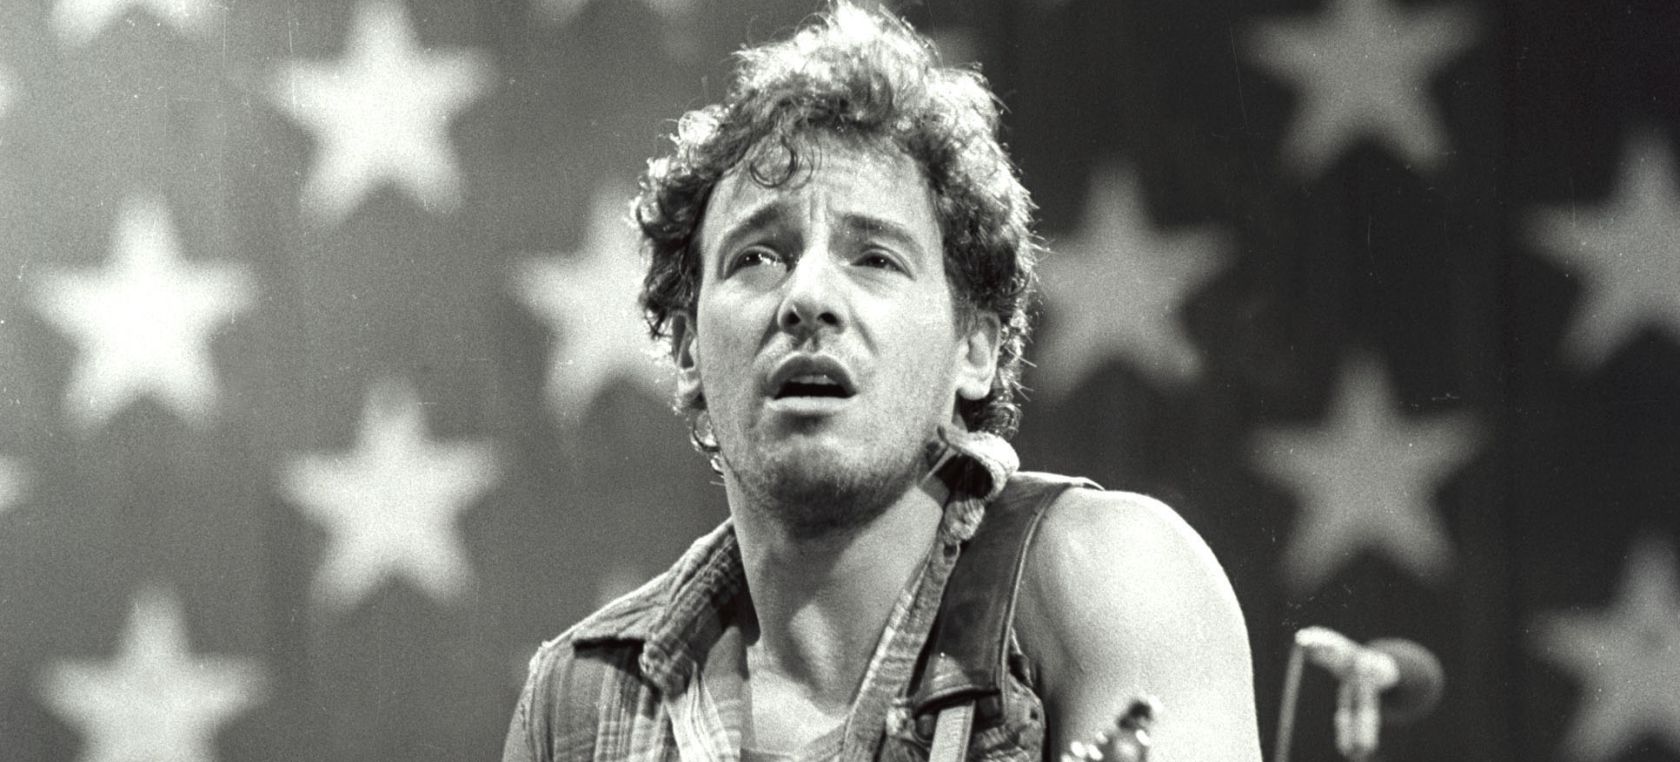 Bruce Springsteen: ‘Dancing in the dark’, el vídeo de Brian De Palma y Courteney Cox que sentó precedente